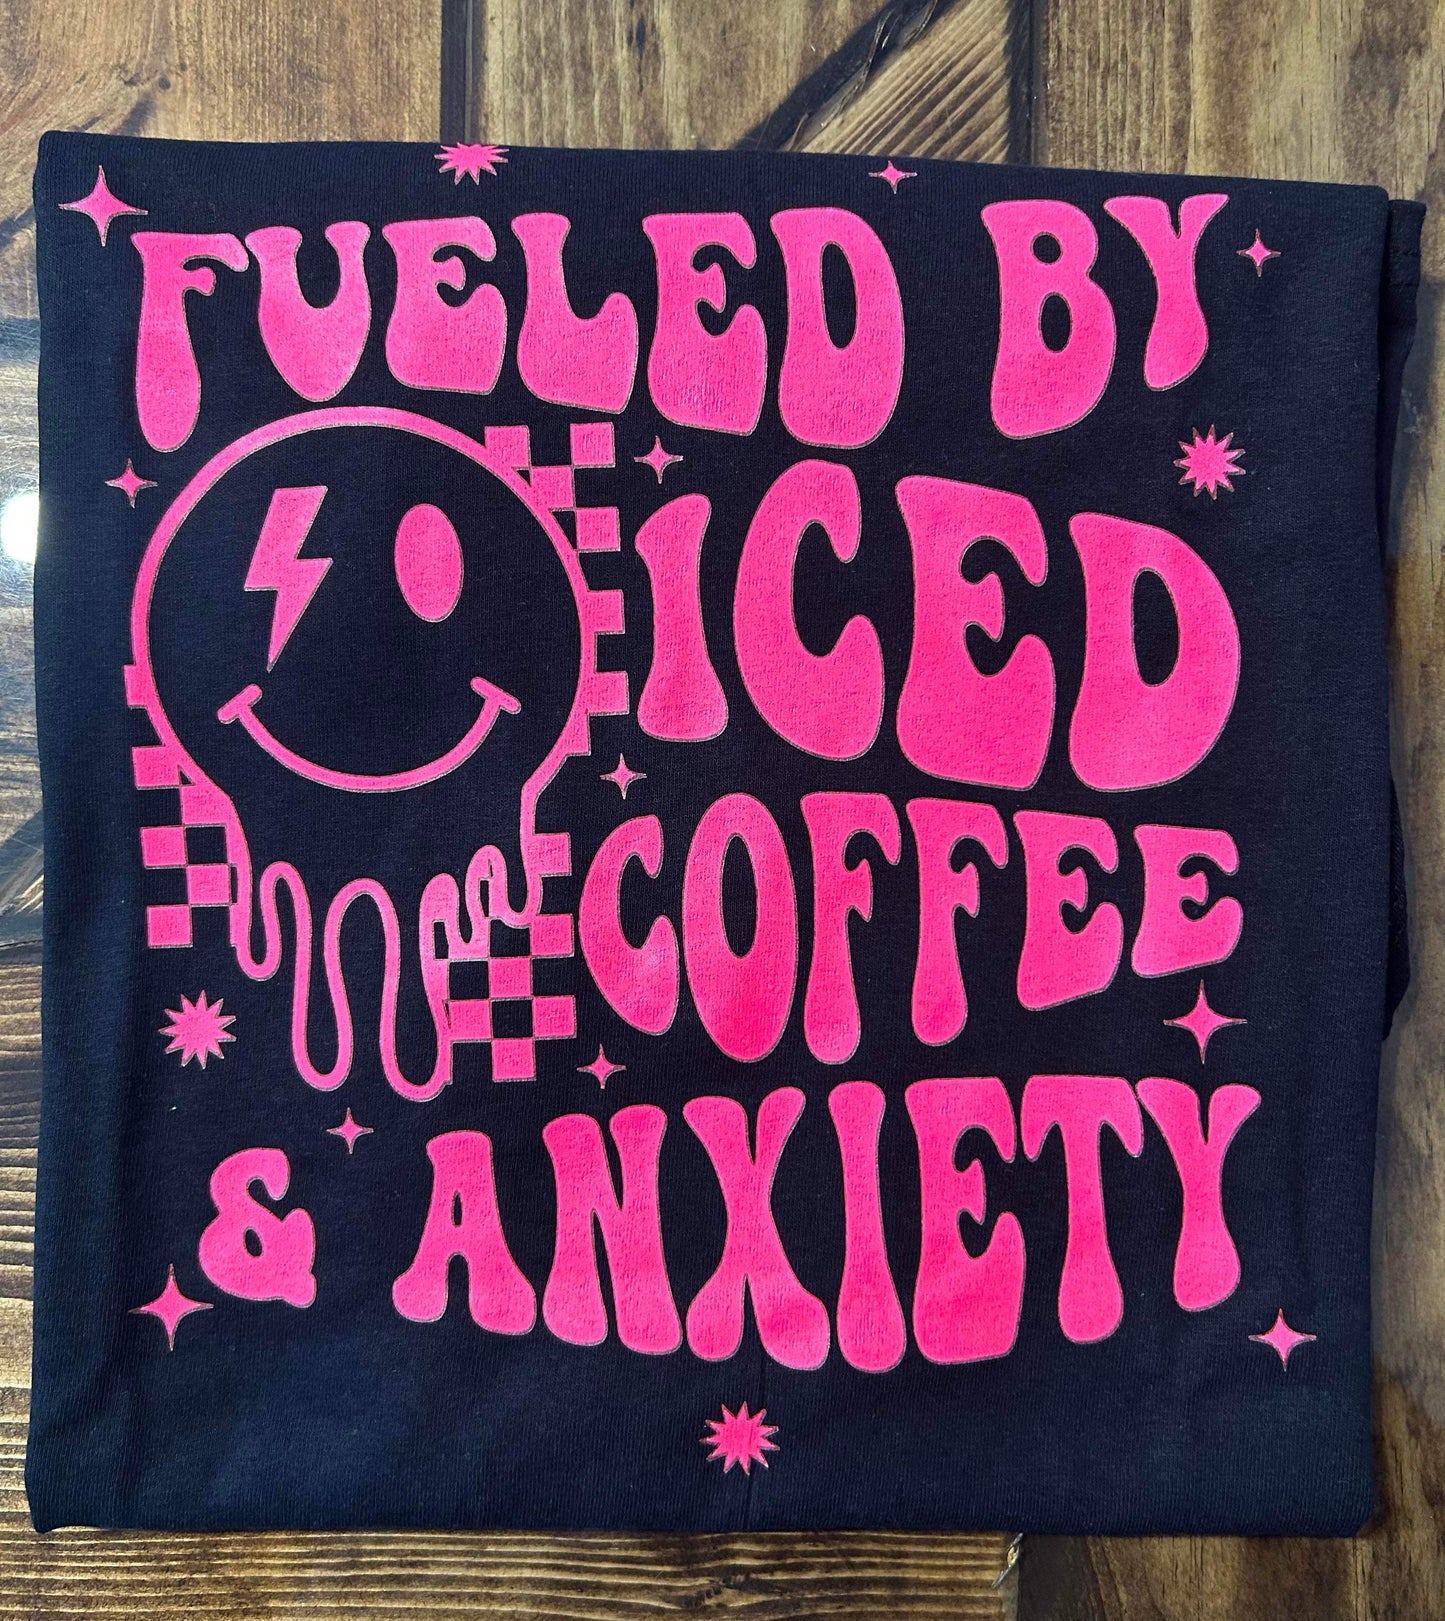 Iced coffee & anxiety